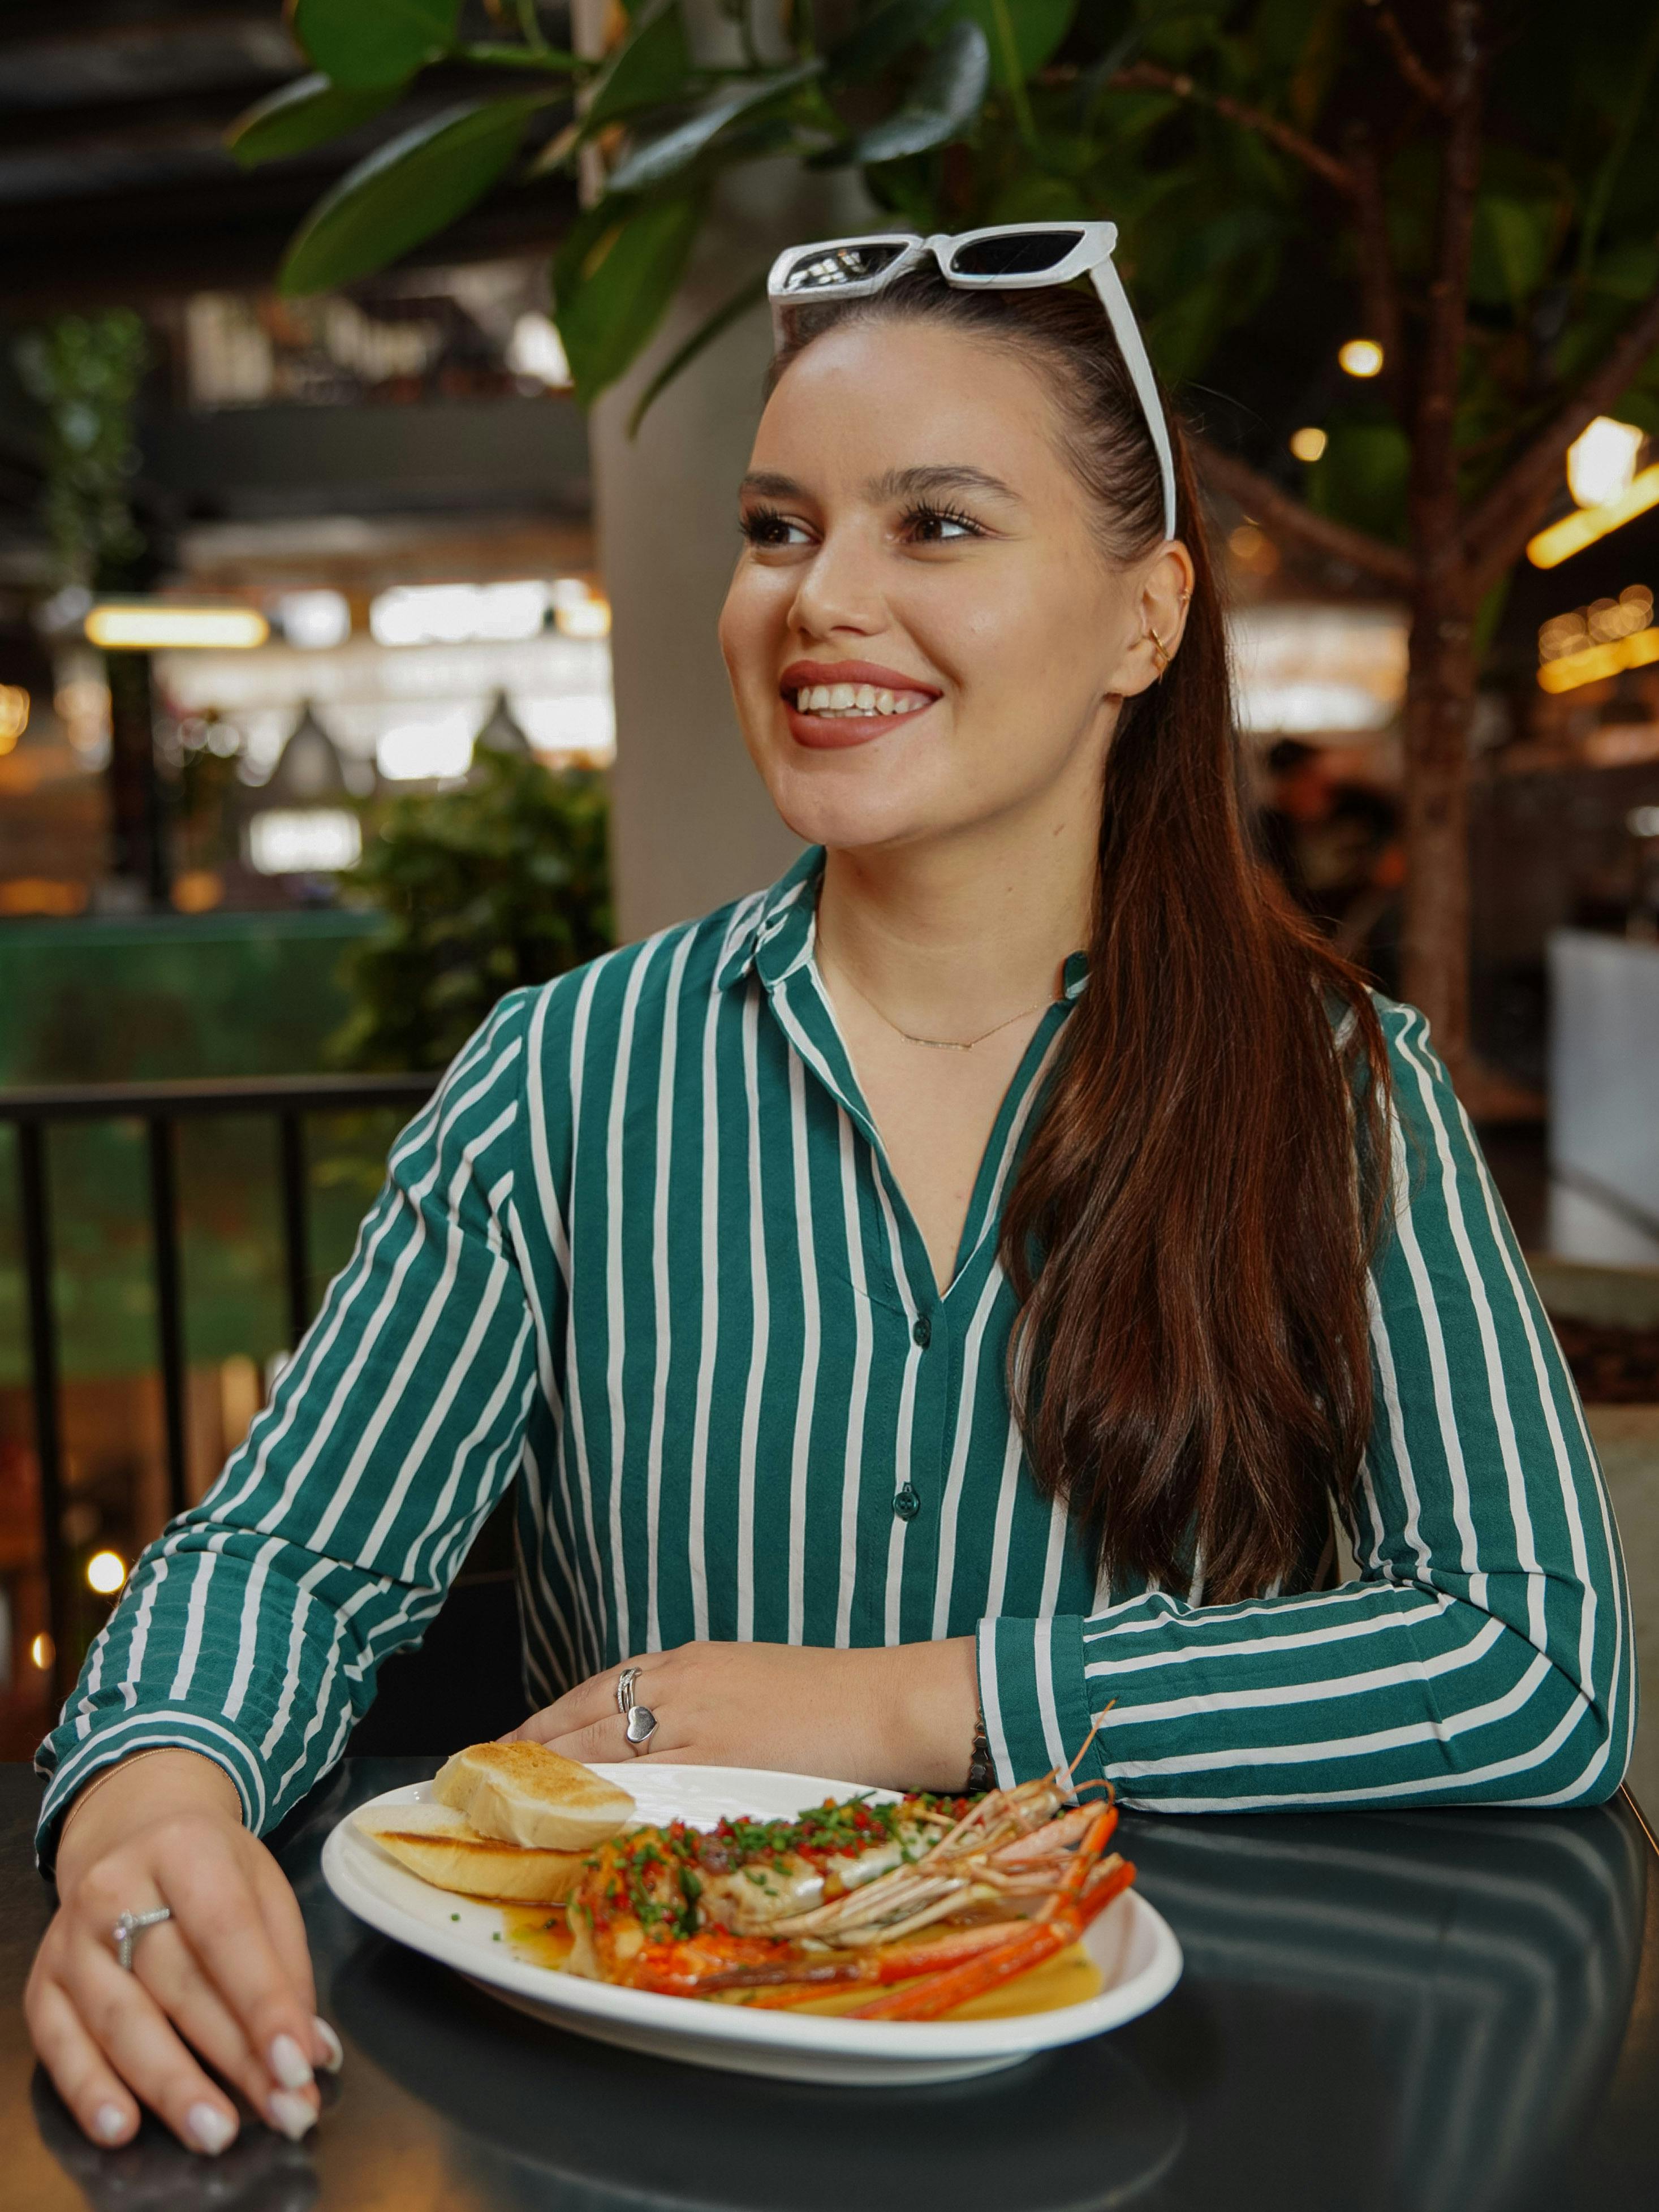 Eine glückliche junge Frau isst ein Hummergericht | Quelle: Pexels